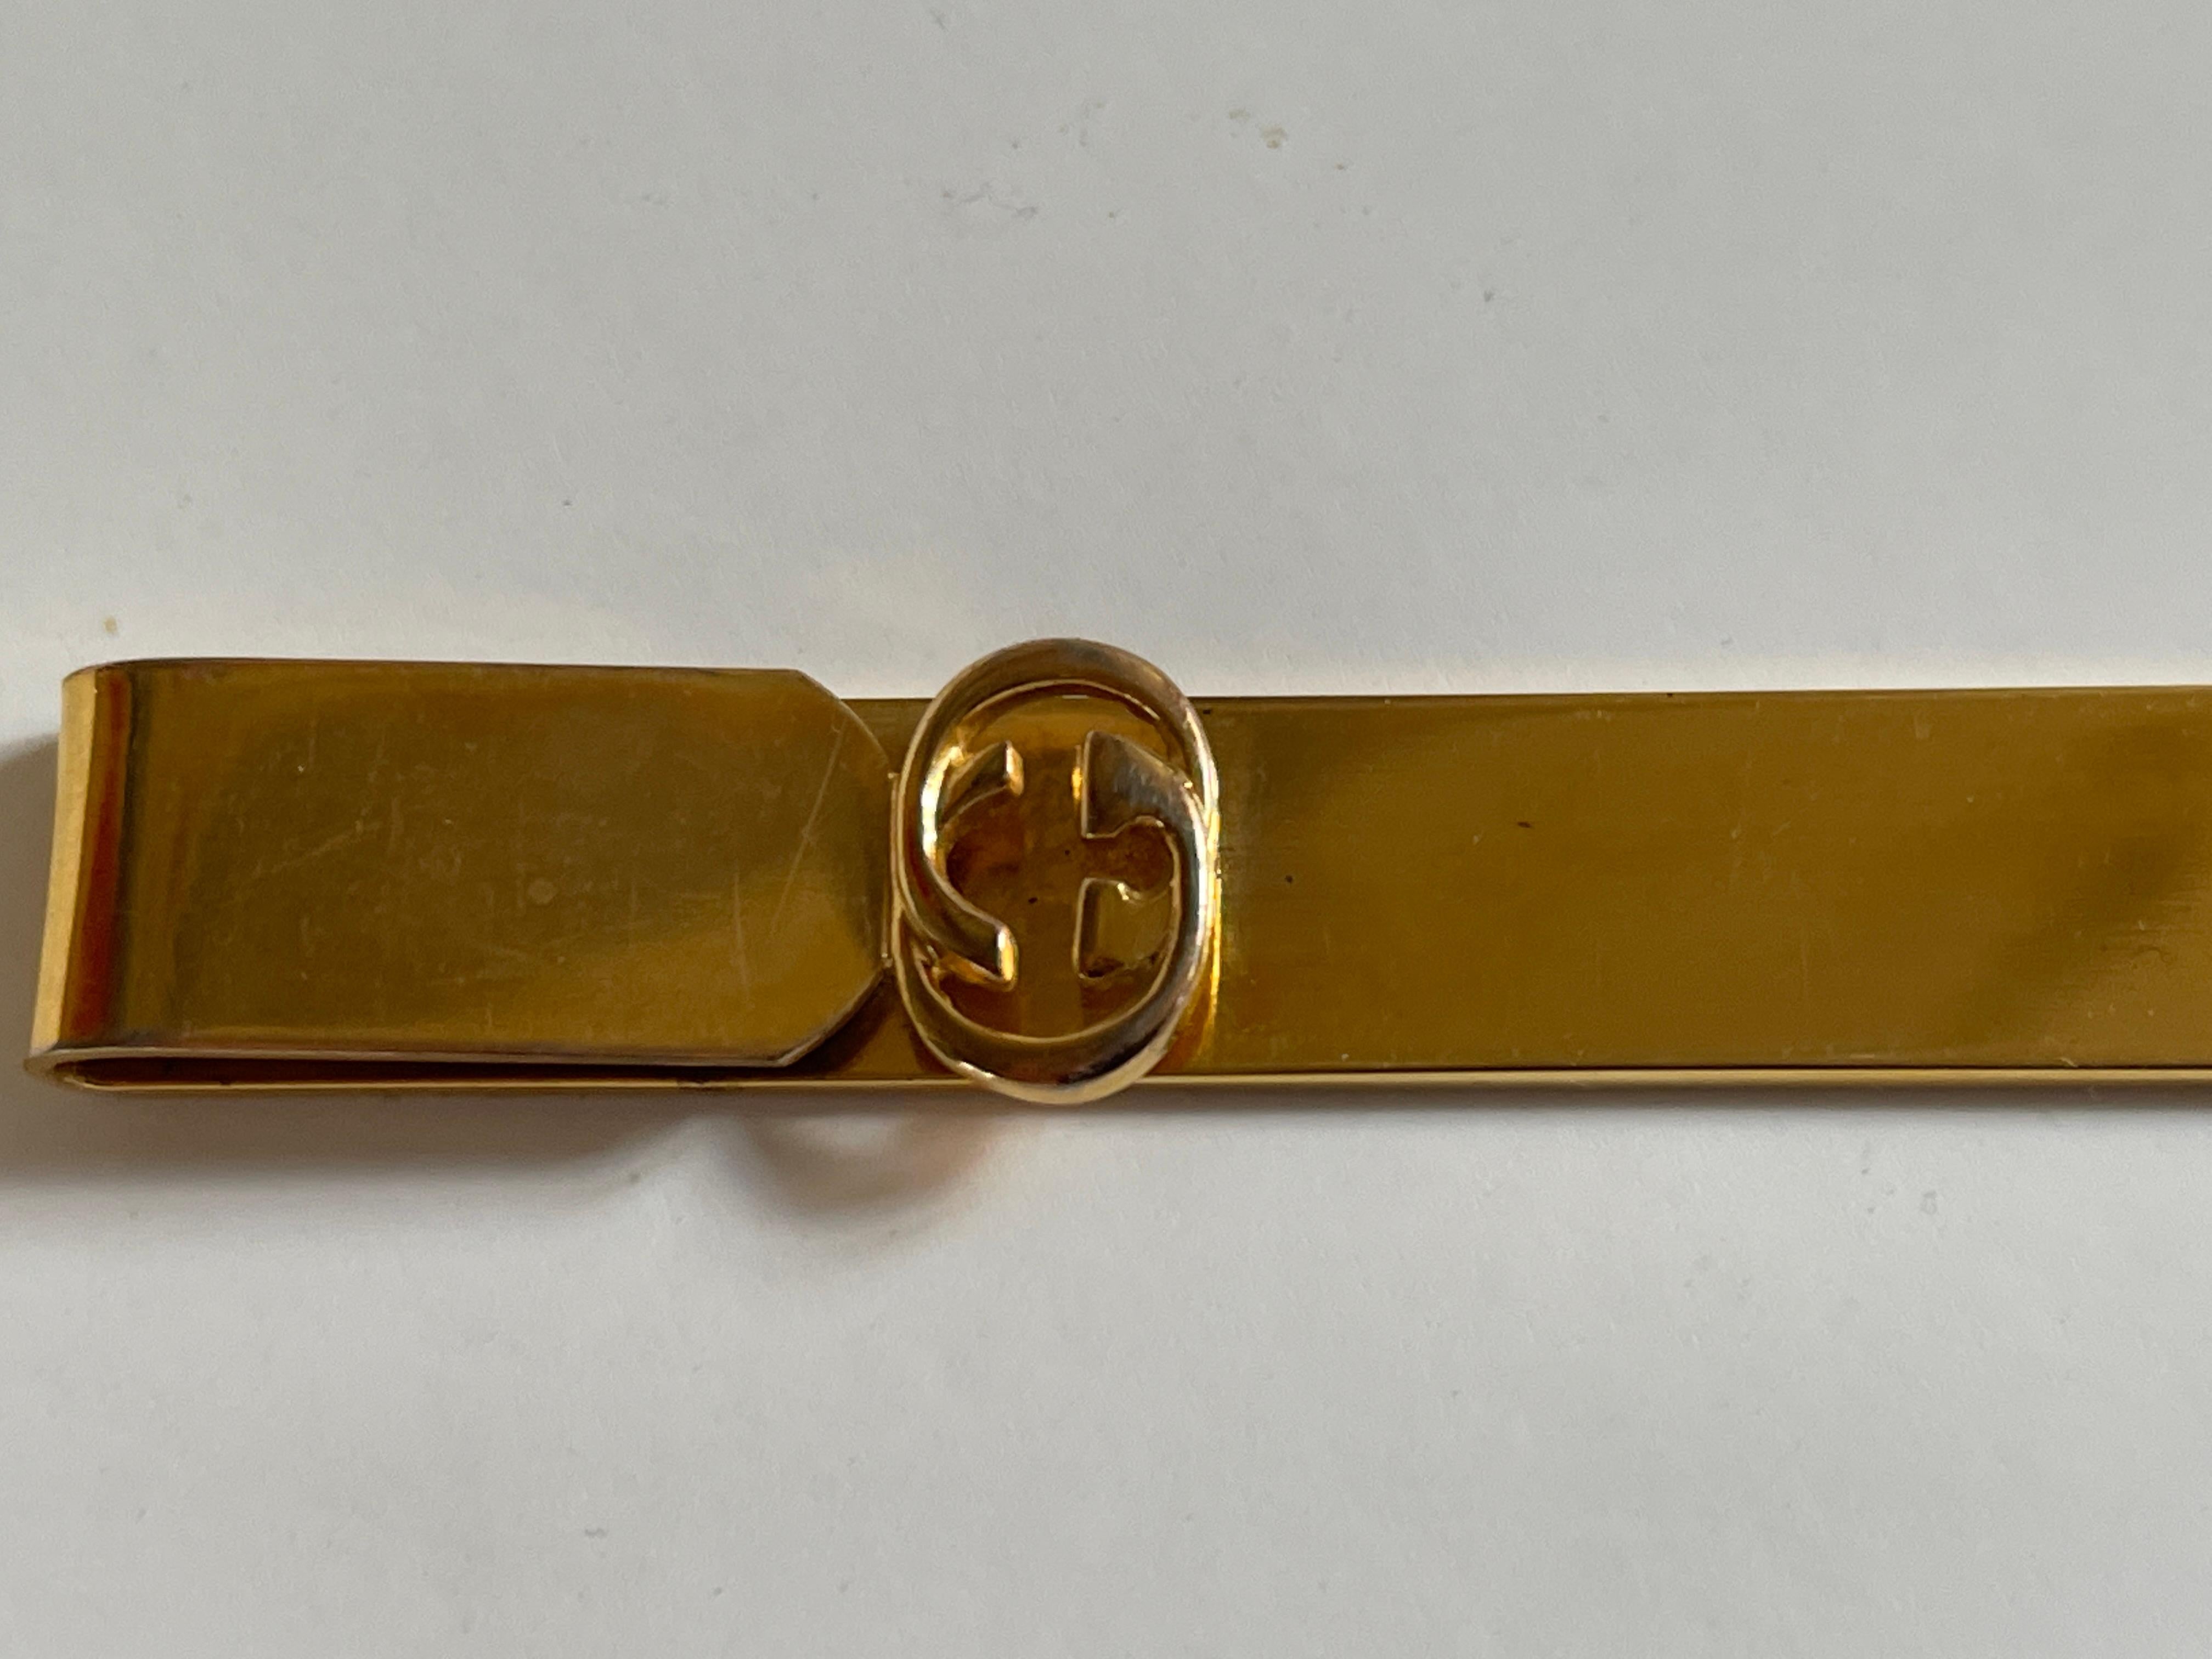 Ouvre-lettres en métal moulé doré Gucci avec logo double G sur la poignée.
Signature gravée au dos GUCCI Made In Italy
Étui d'origine en cuir noir avec le cachet de Gucci au dos.